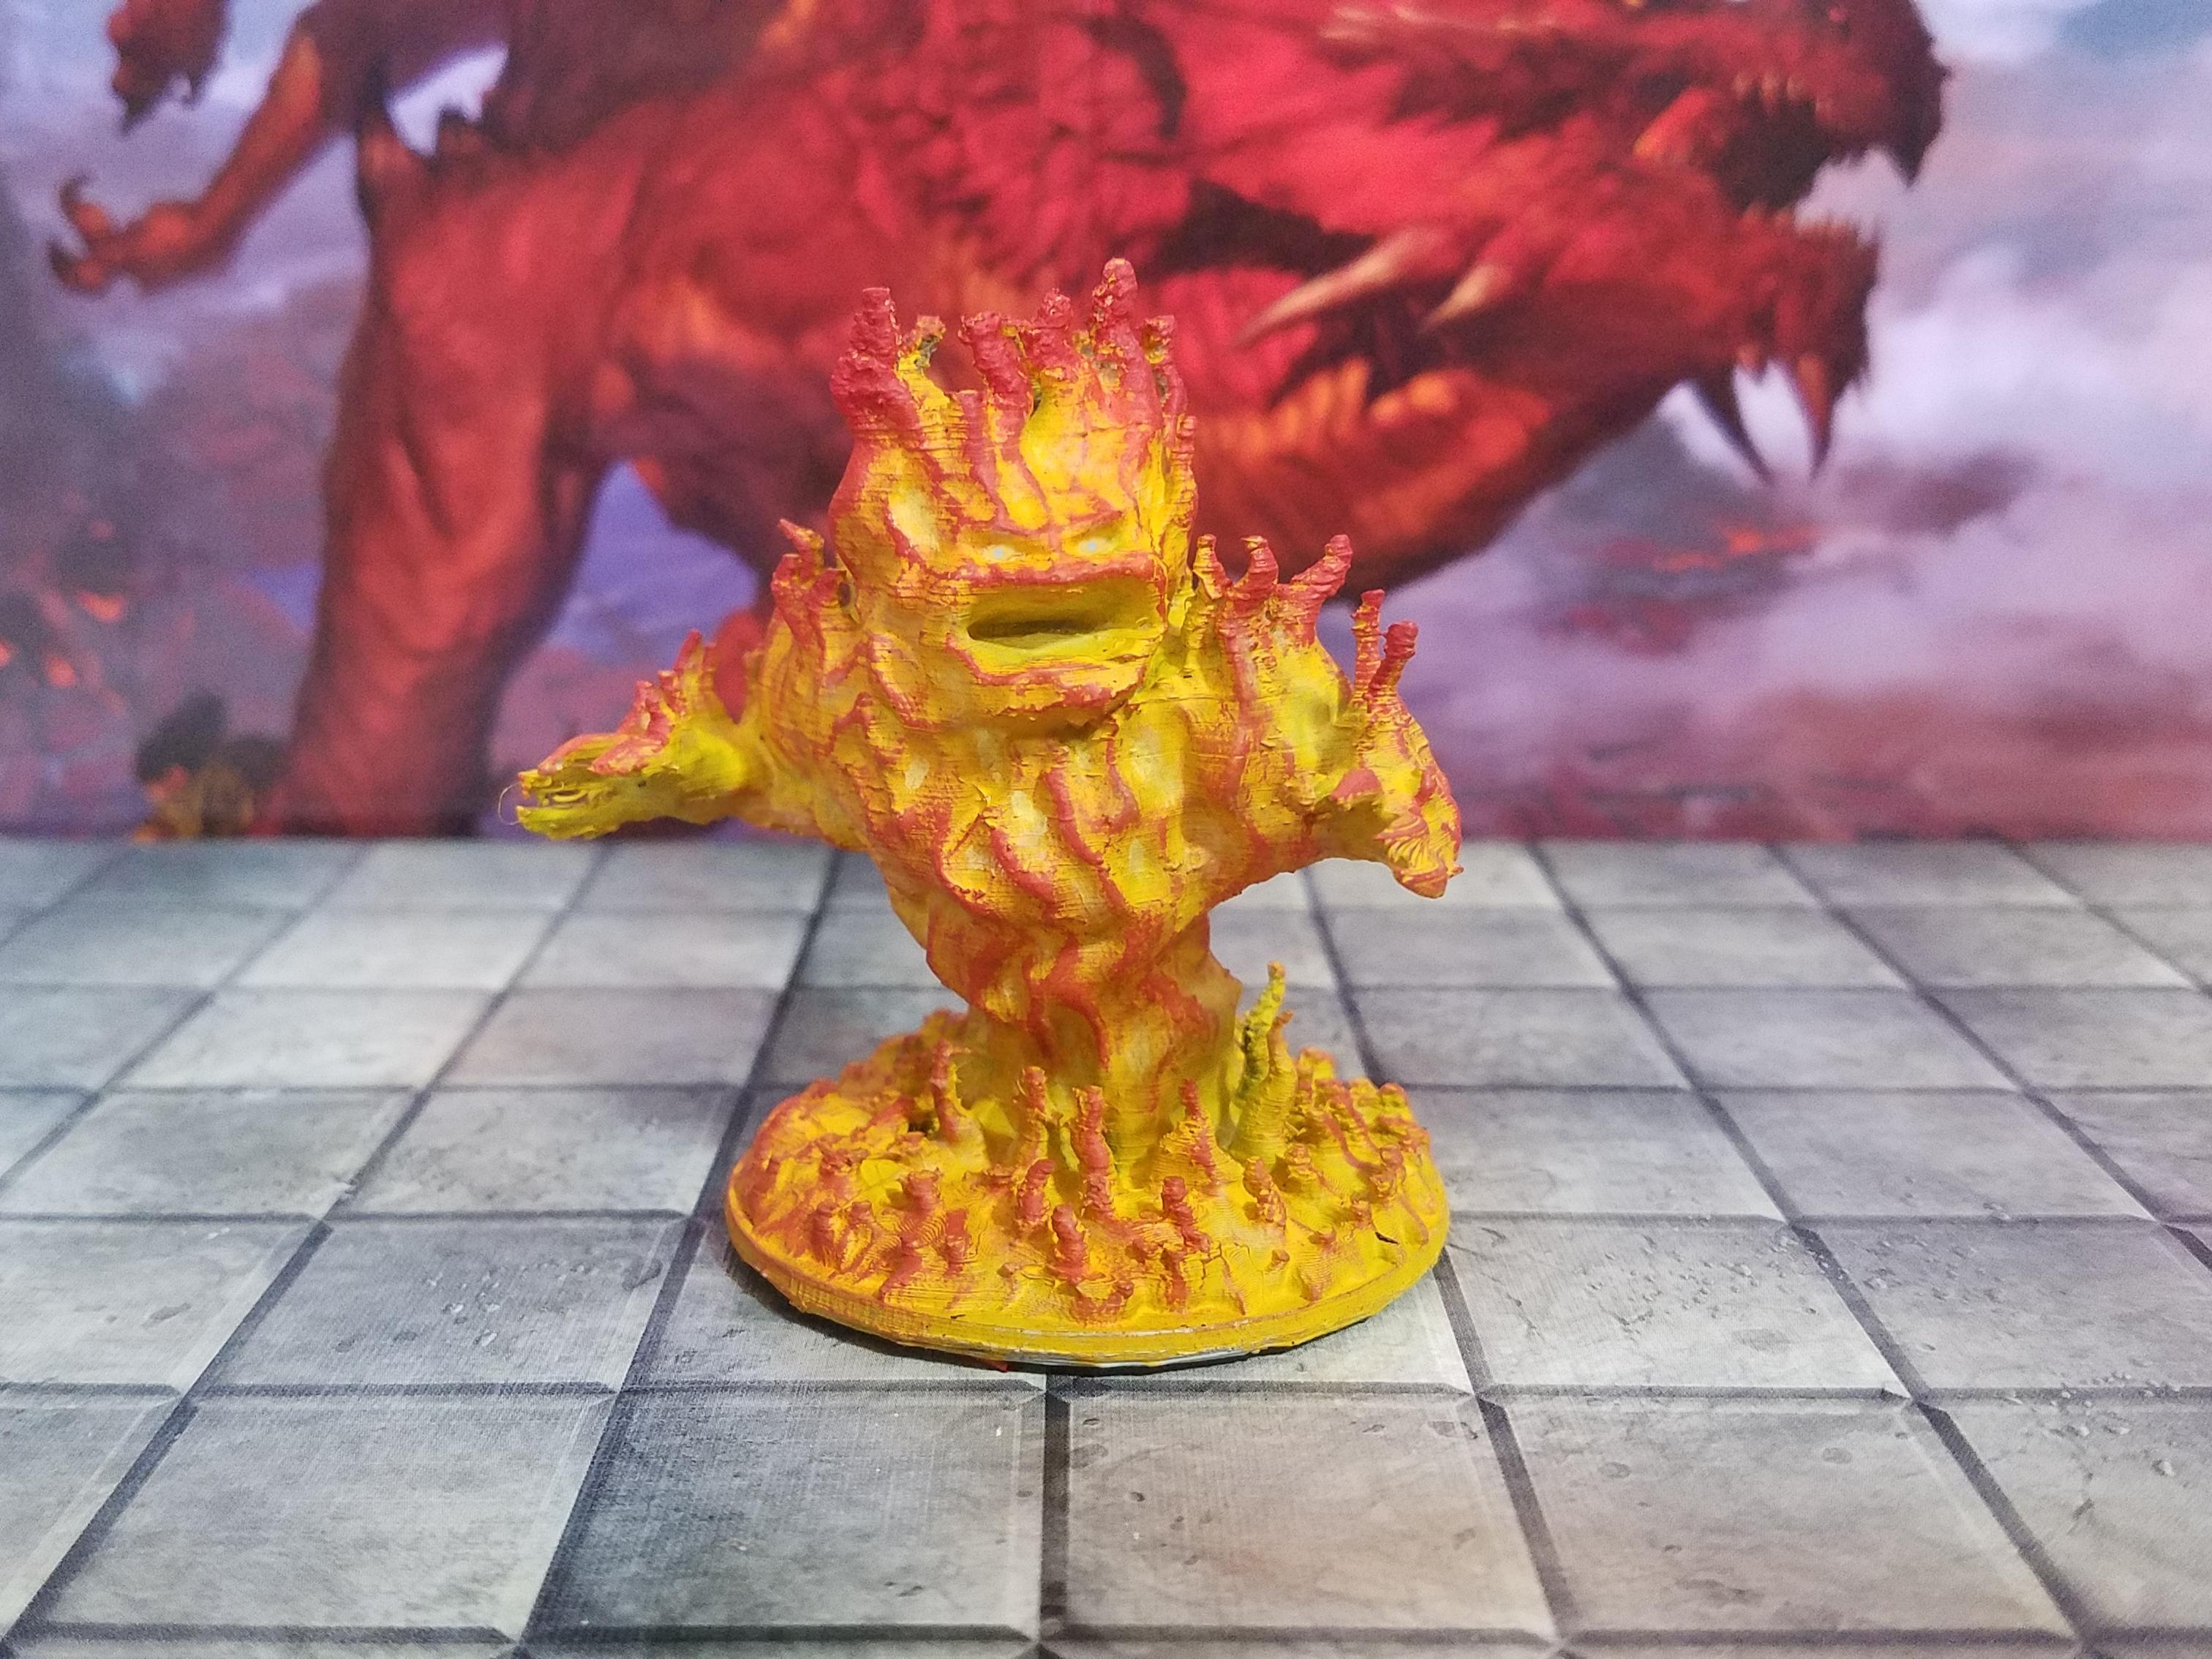 Fire Elemental - Fire Elemental - 3d print - D&D - 3d model